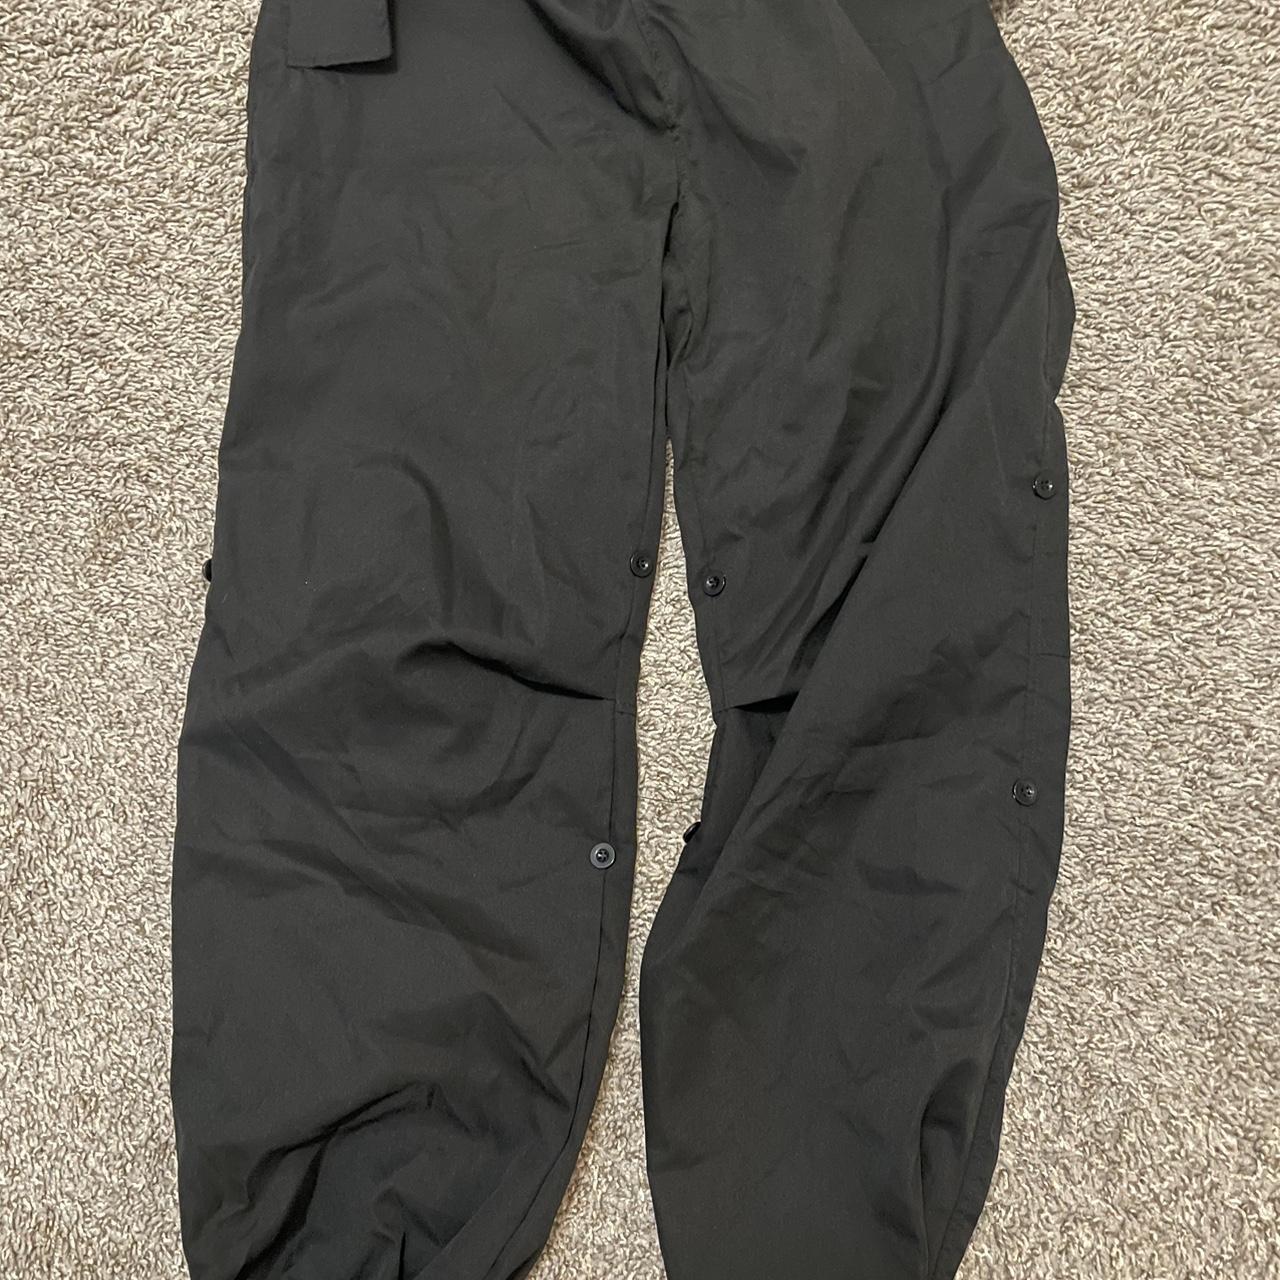 Black parachute pants - Depop